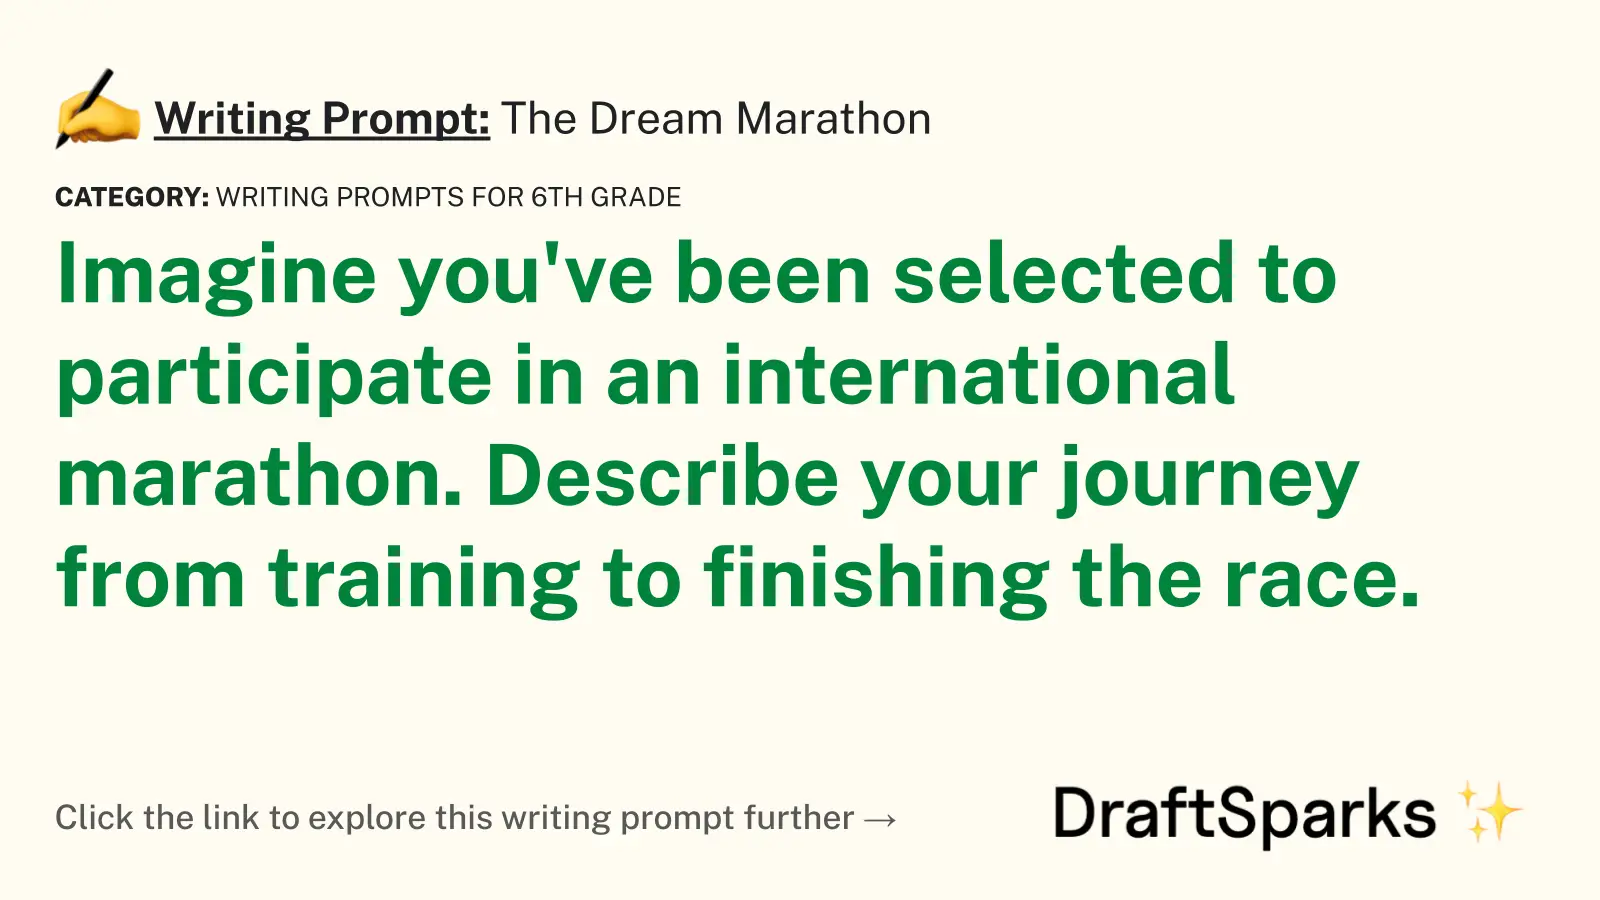 The Dream Marathon